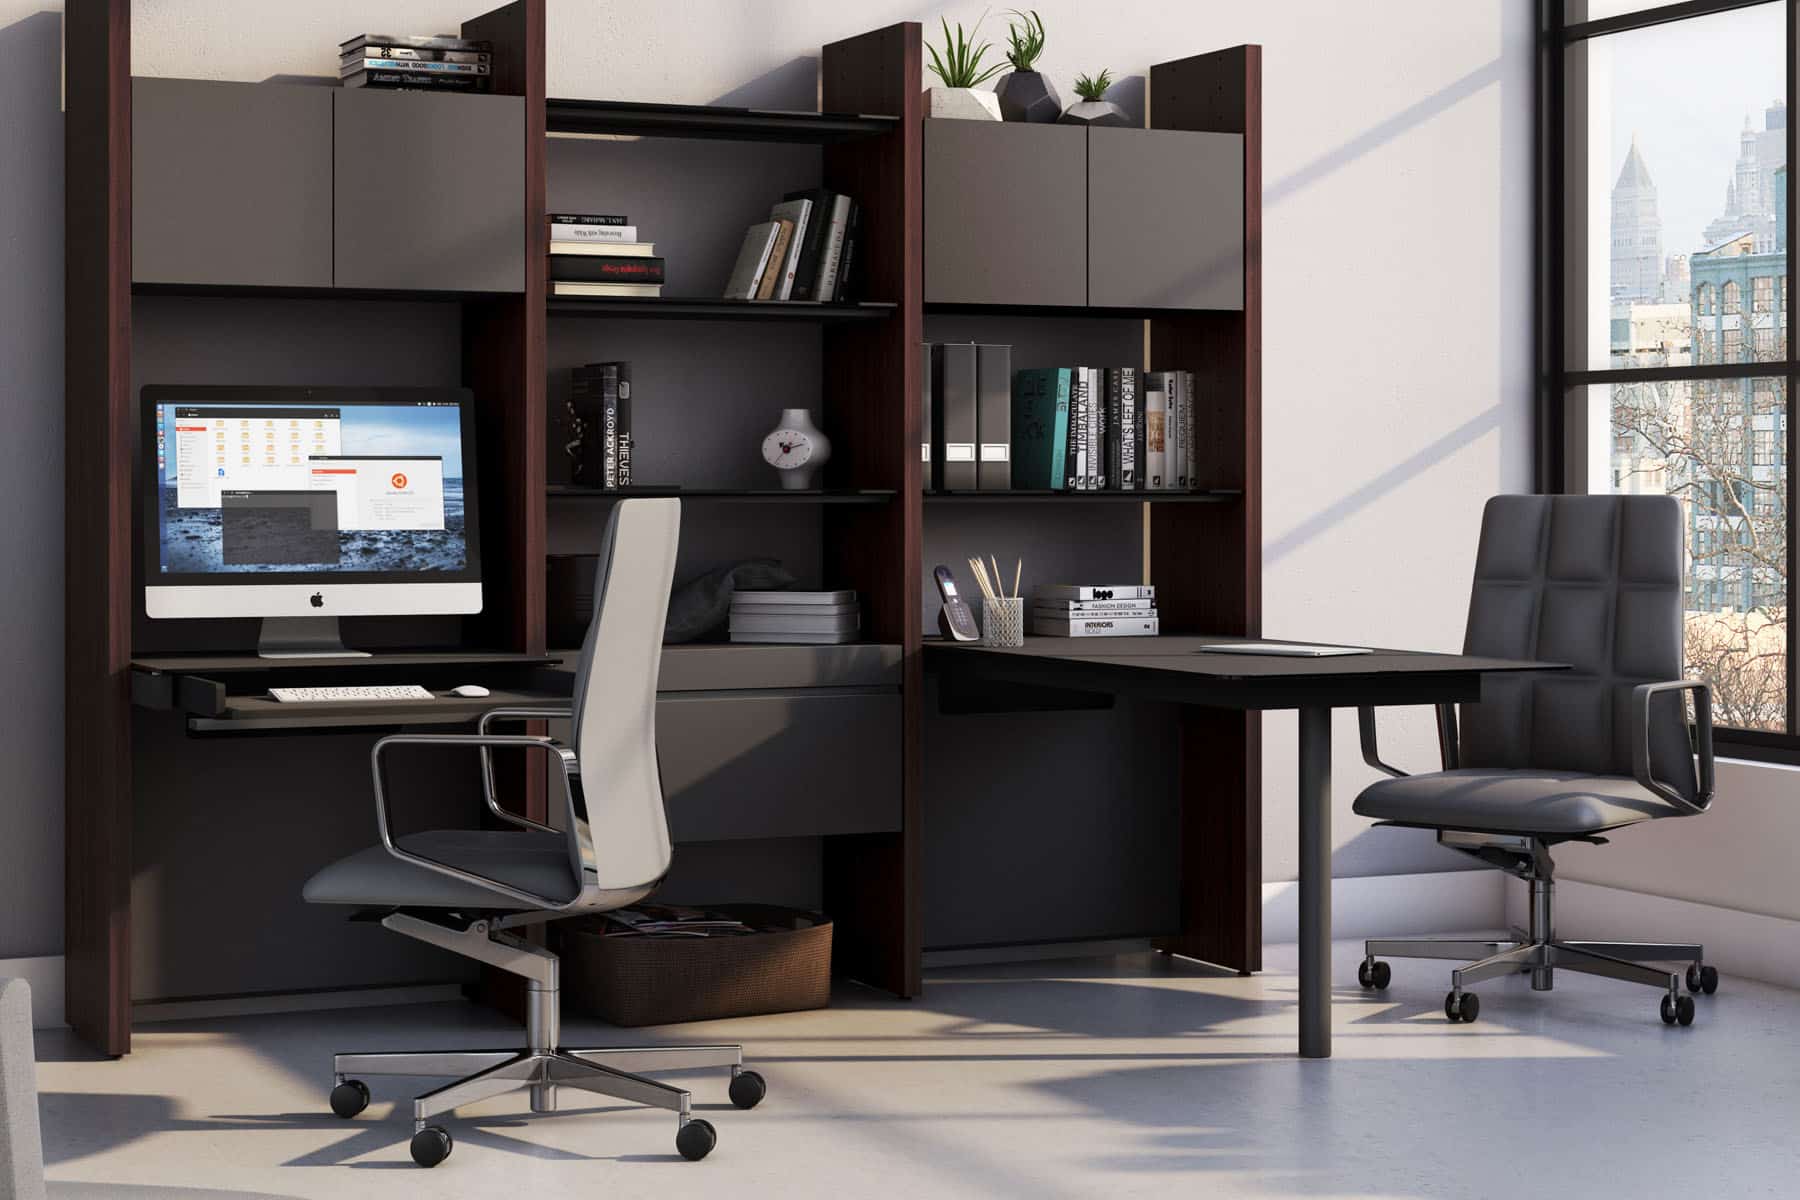 Modern Office Chairs & Desks With Storage